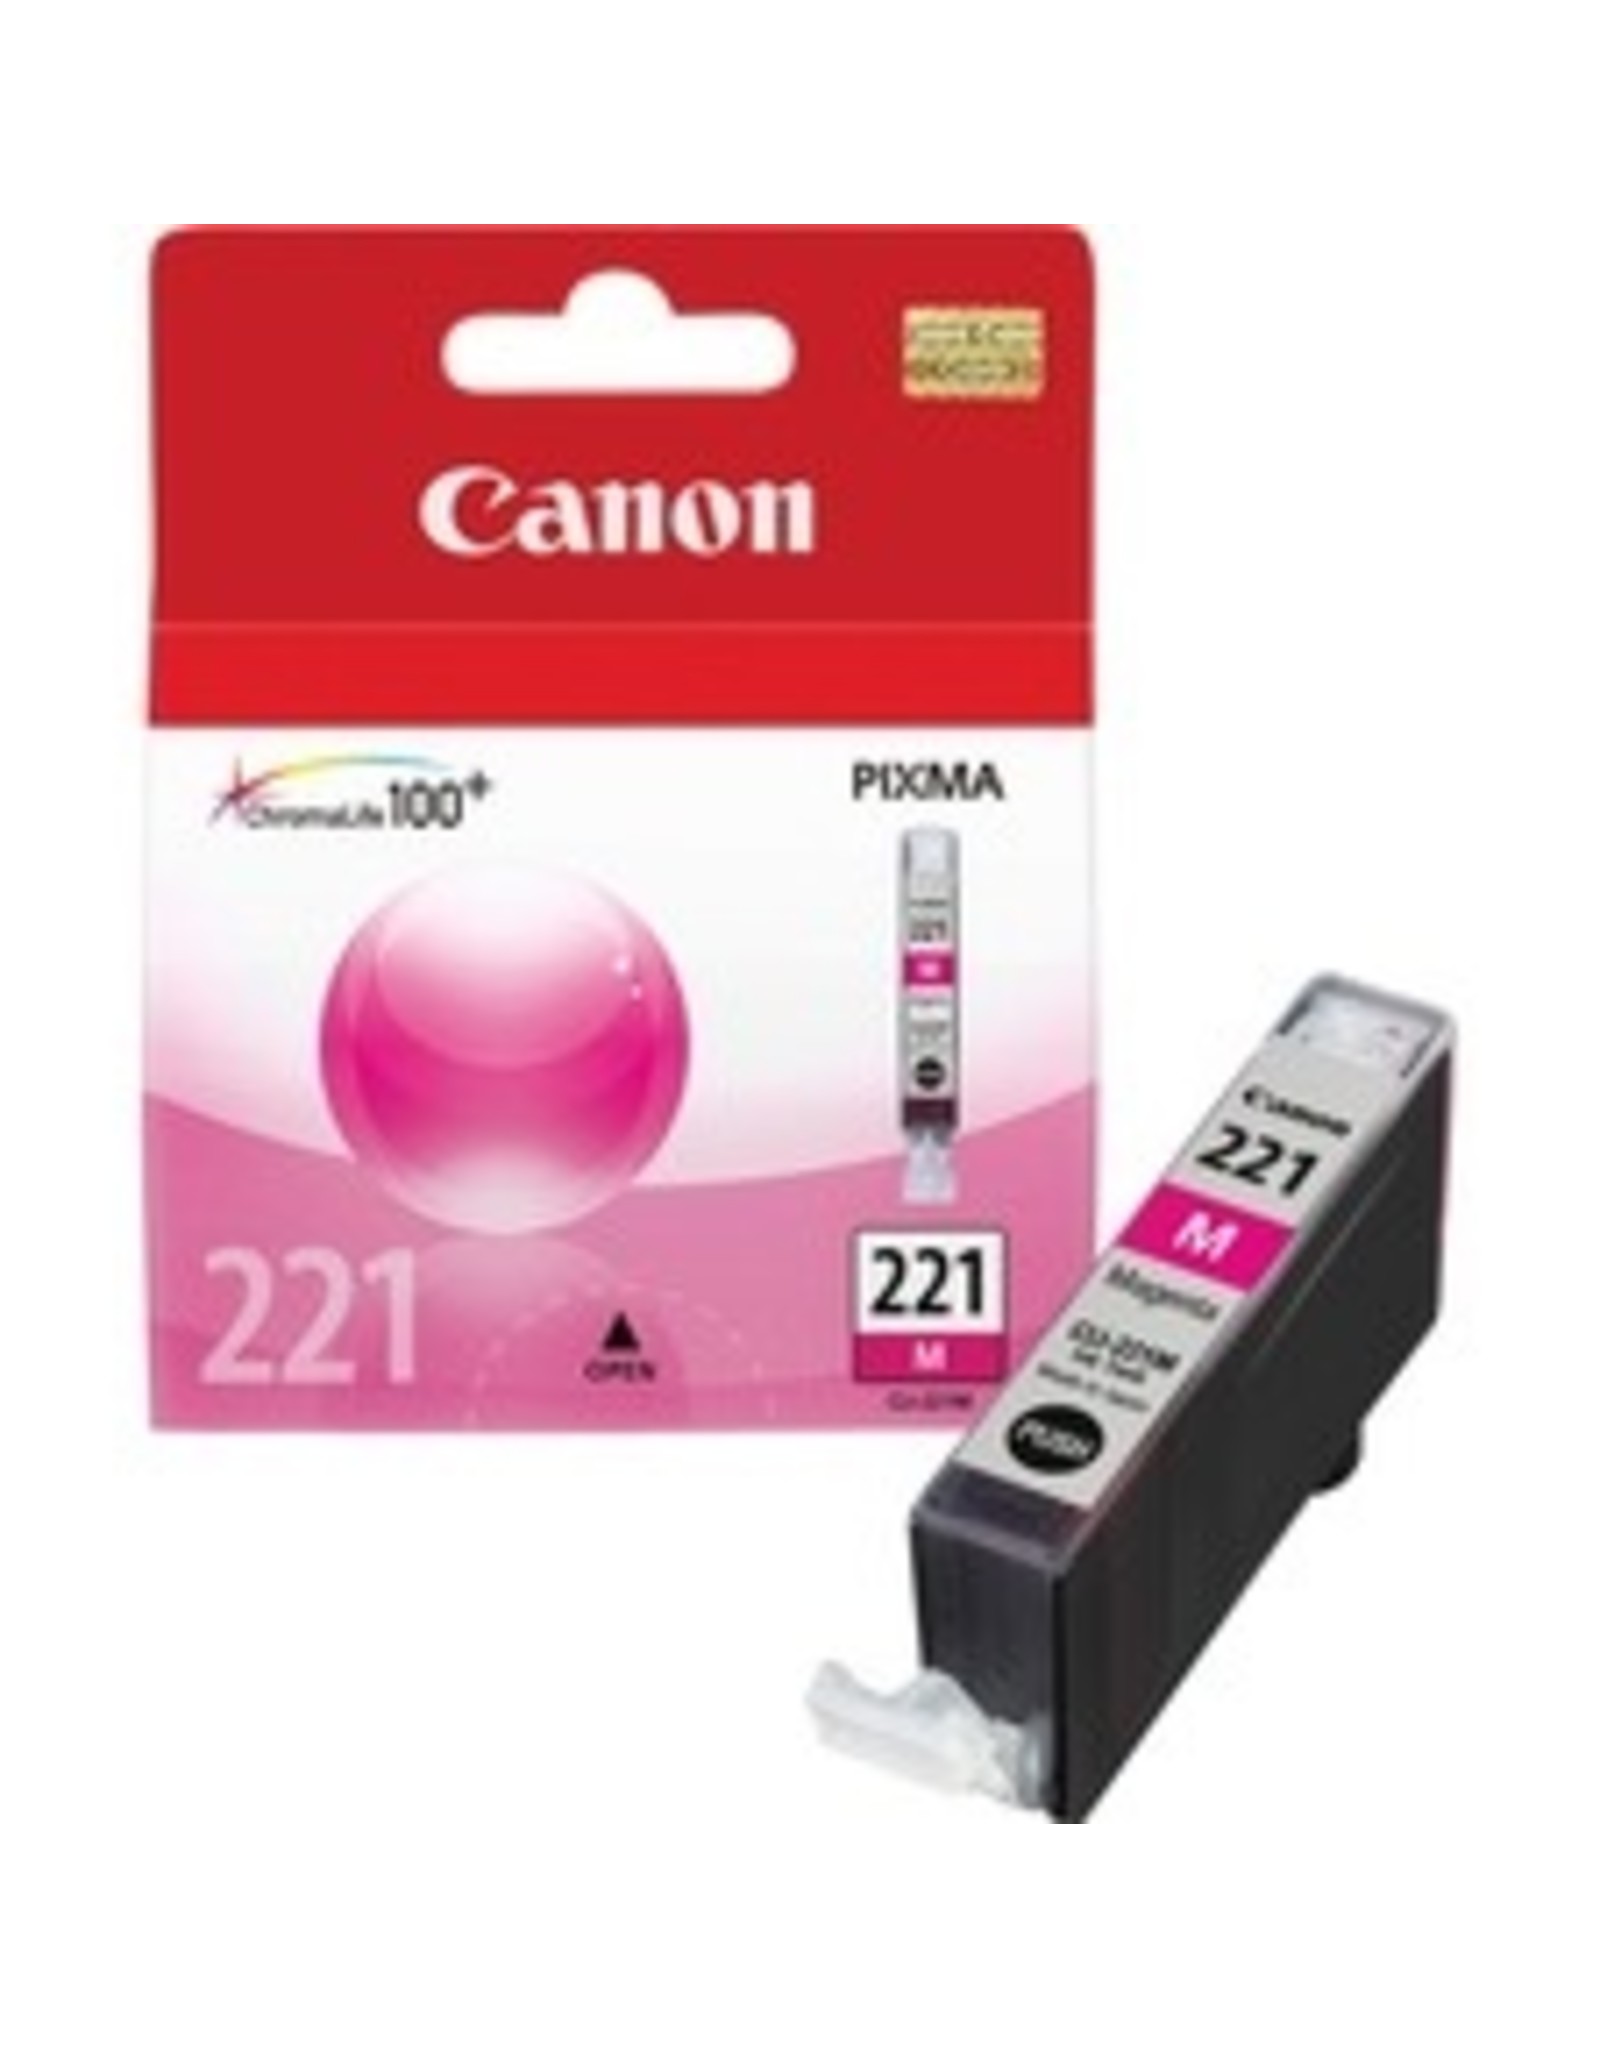 Canon CLI-221M Magenta Original Ink Cartridge